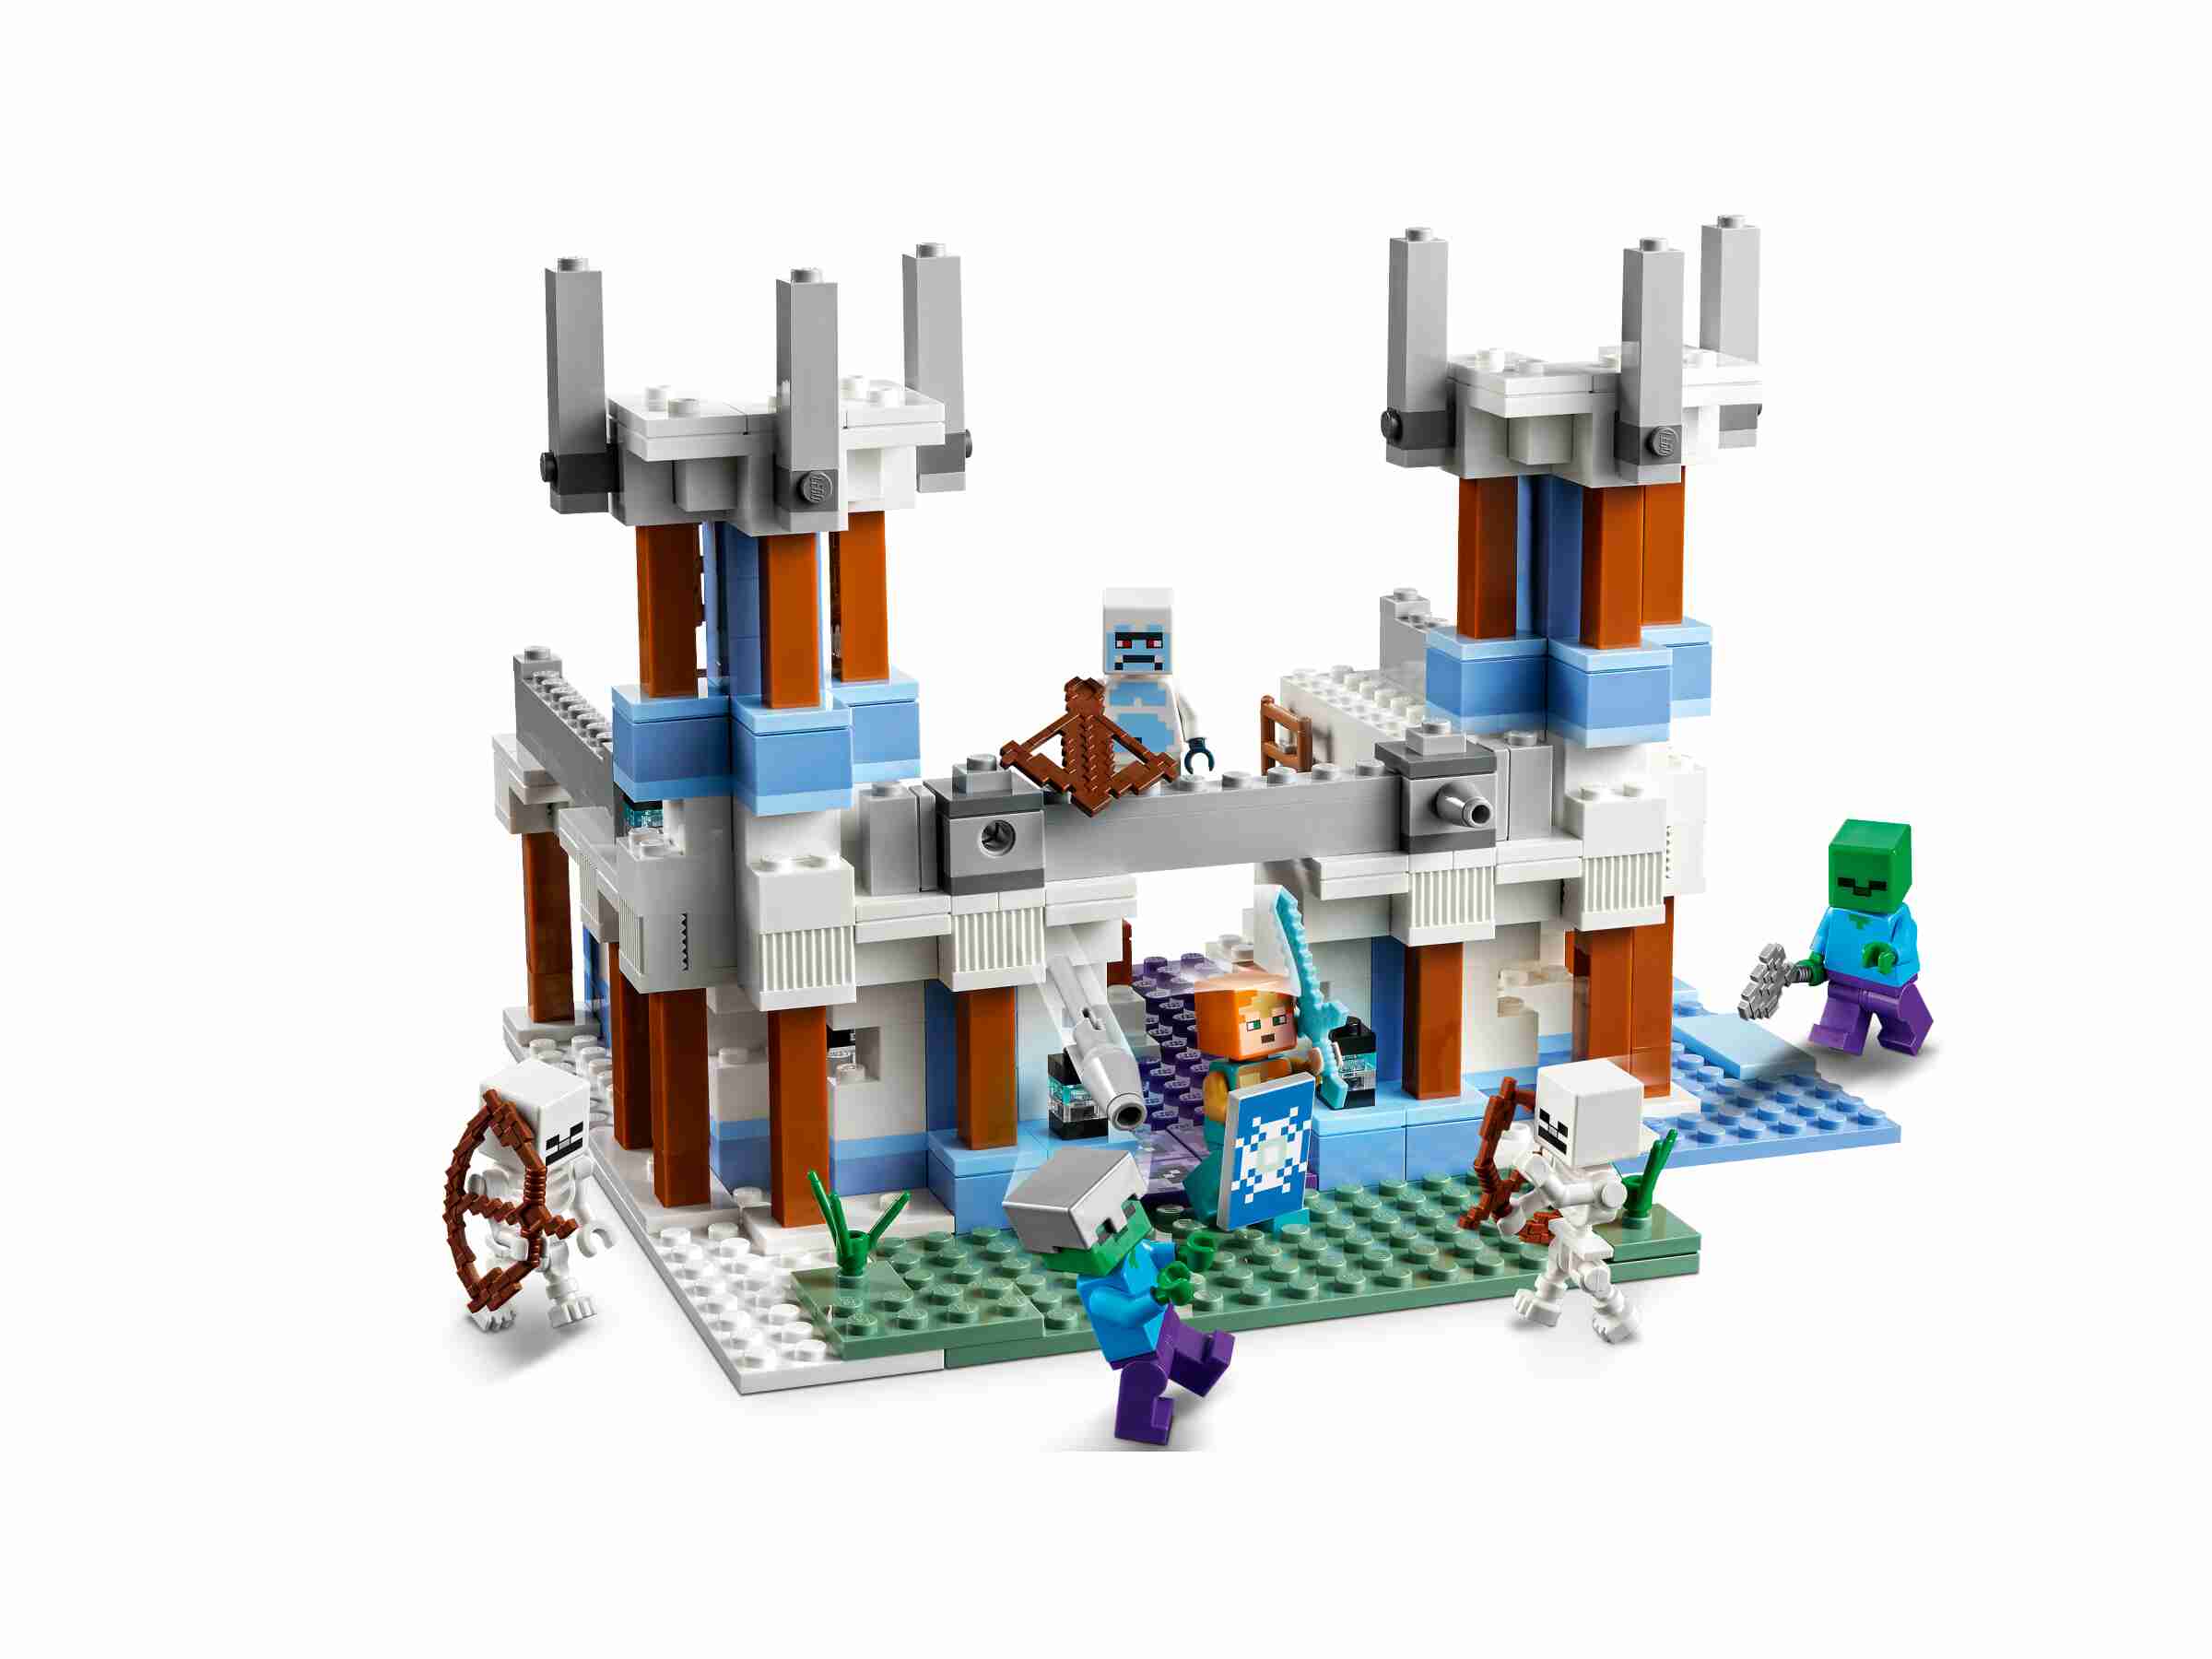 LEGO 21186 Minecraft Der Eispalast, viele vertraute Charaktere